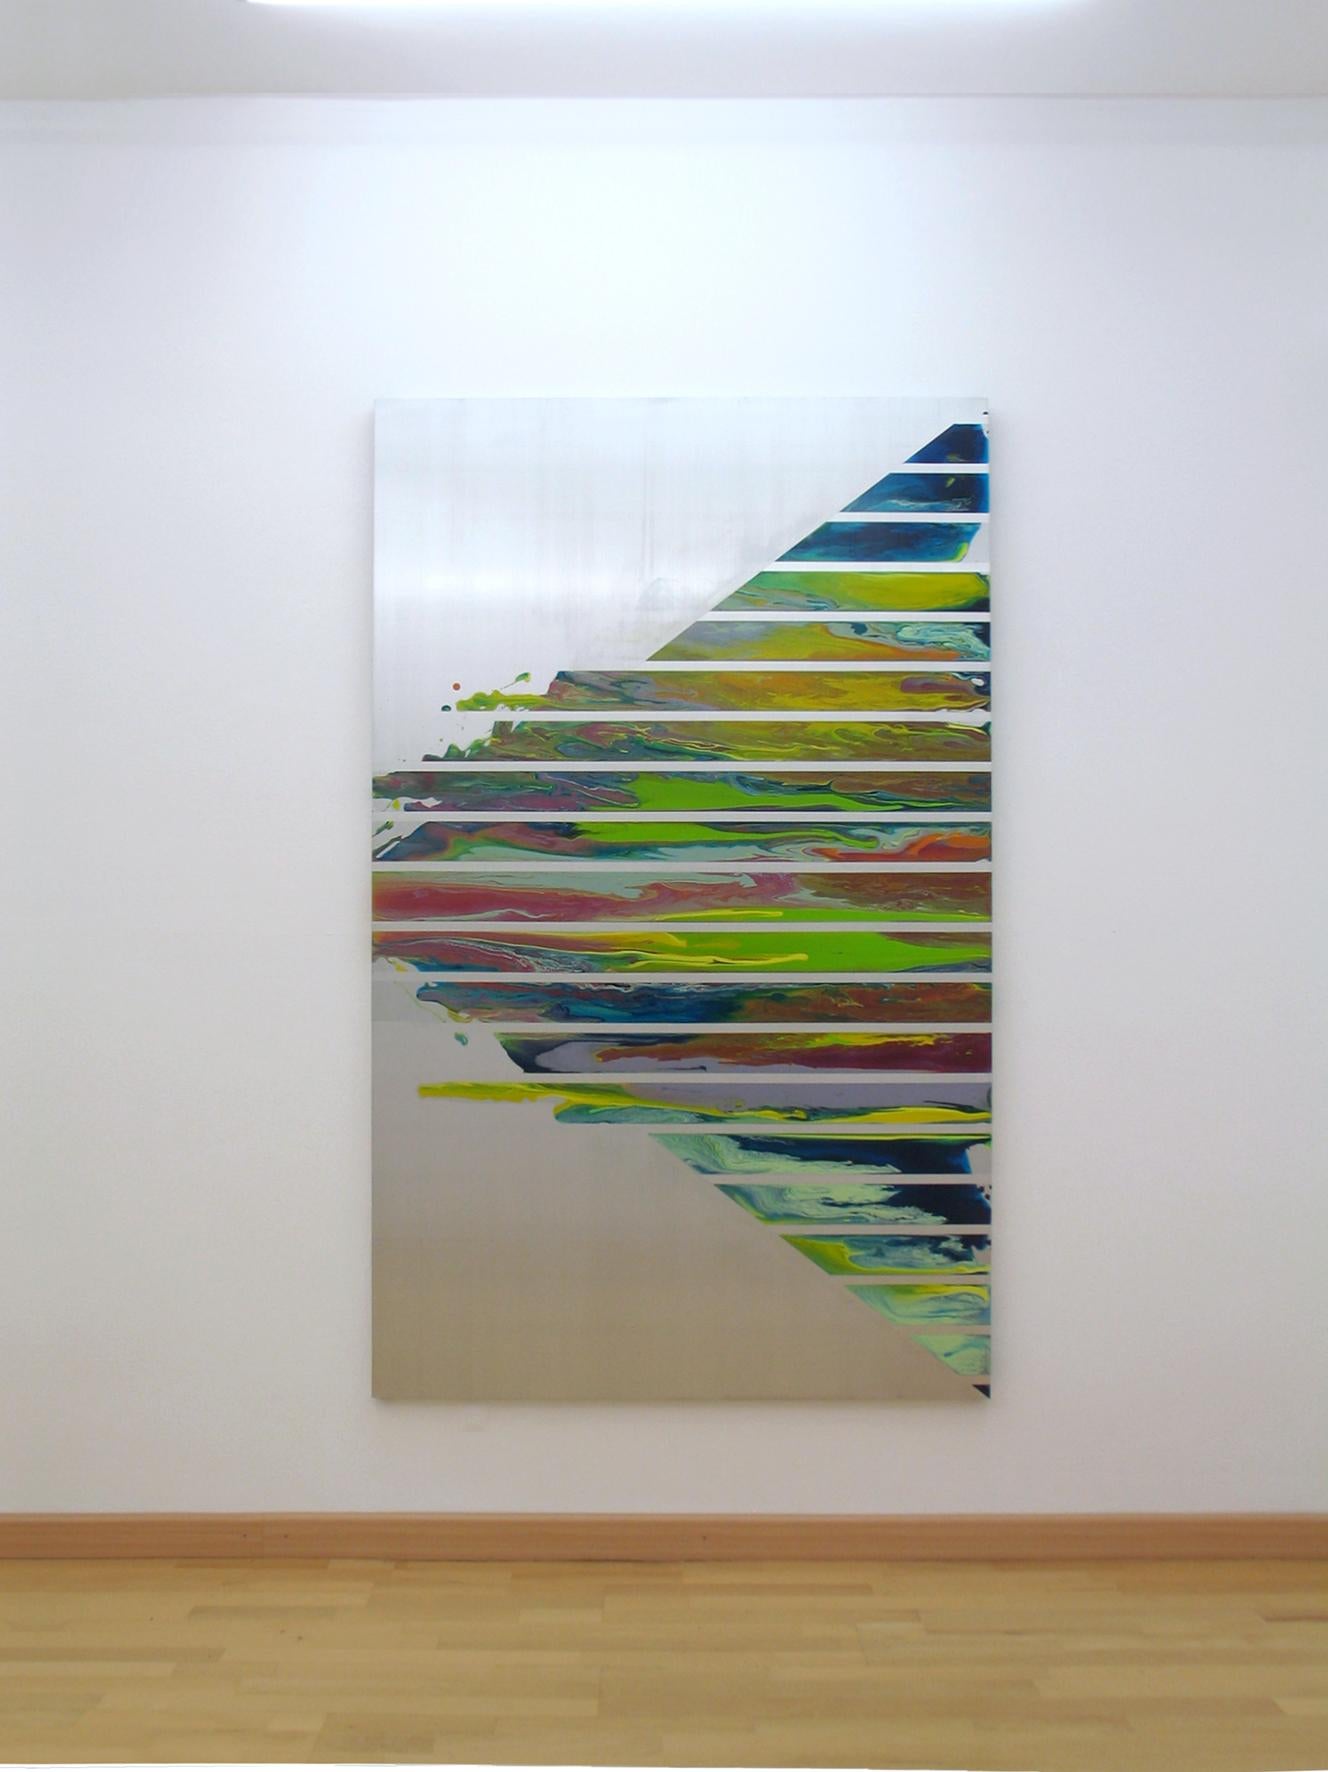 d0110-1 de l'artiste contemporain Ahn Hyun-Ju qui fait partie de la série "Dripping". Technique mixte sur aluminium, 200 cm x 123 cm.

Dans cette série de peintures abstraites, l'artiste joue avec la technique du dripping qu'elle combine avec des